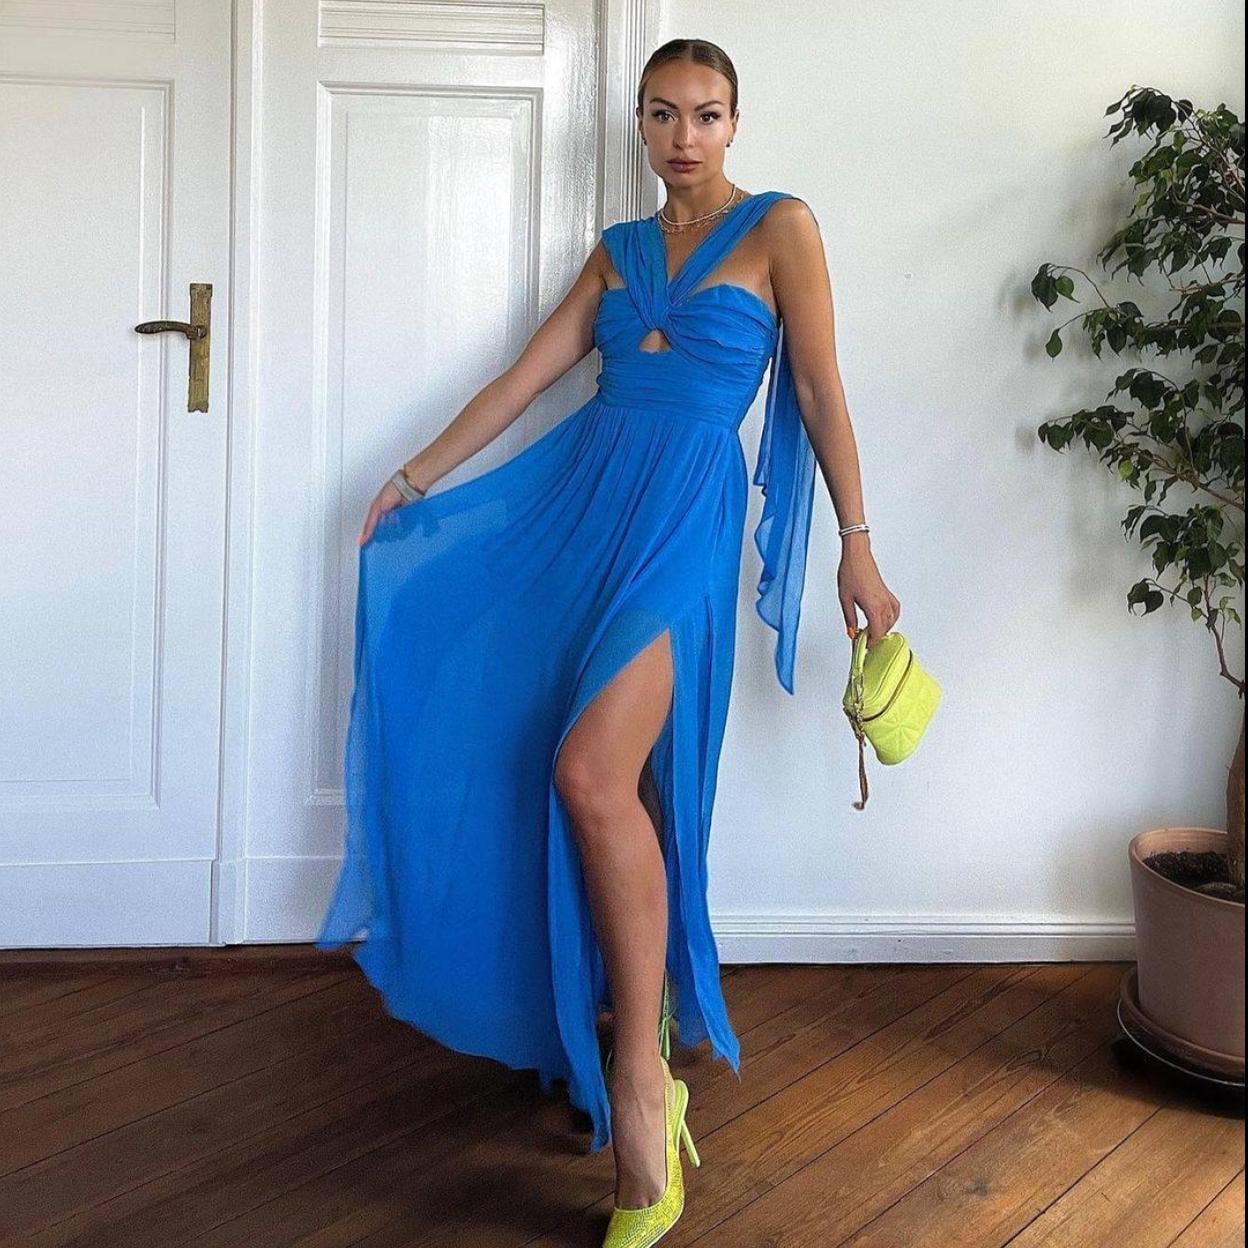 El espectacular vestido de invitada más buscado del low cost que favorece a  todas | Mujer Hoy